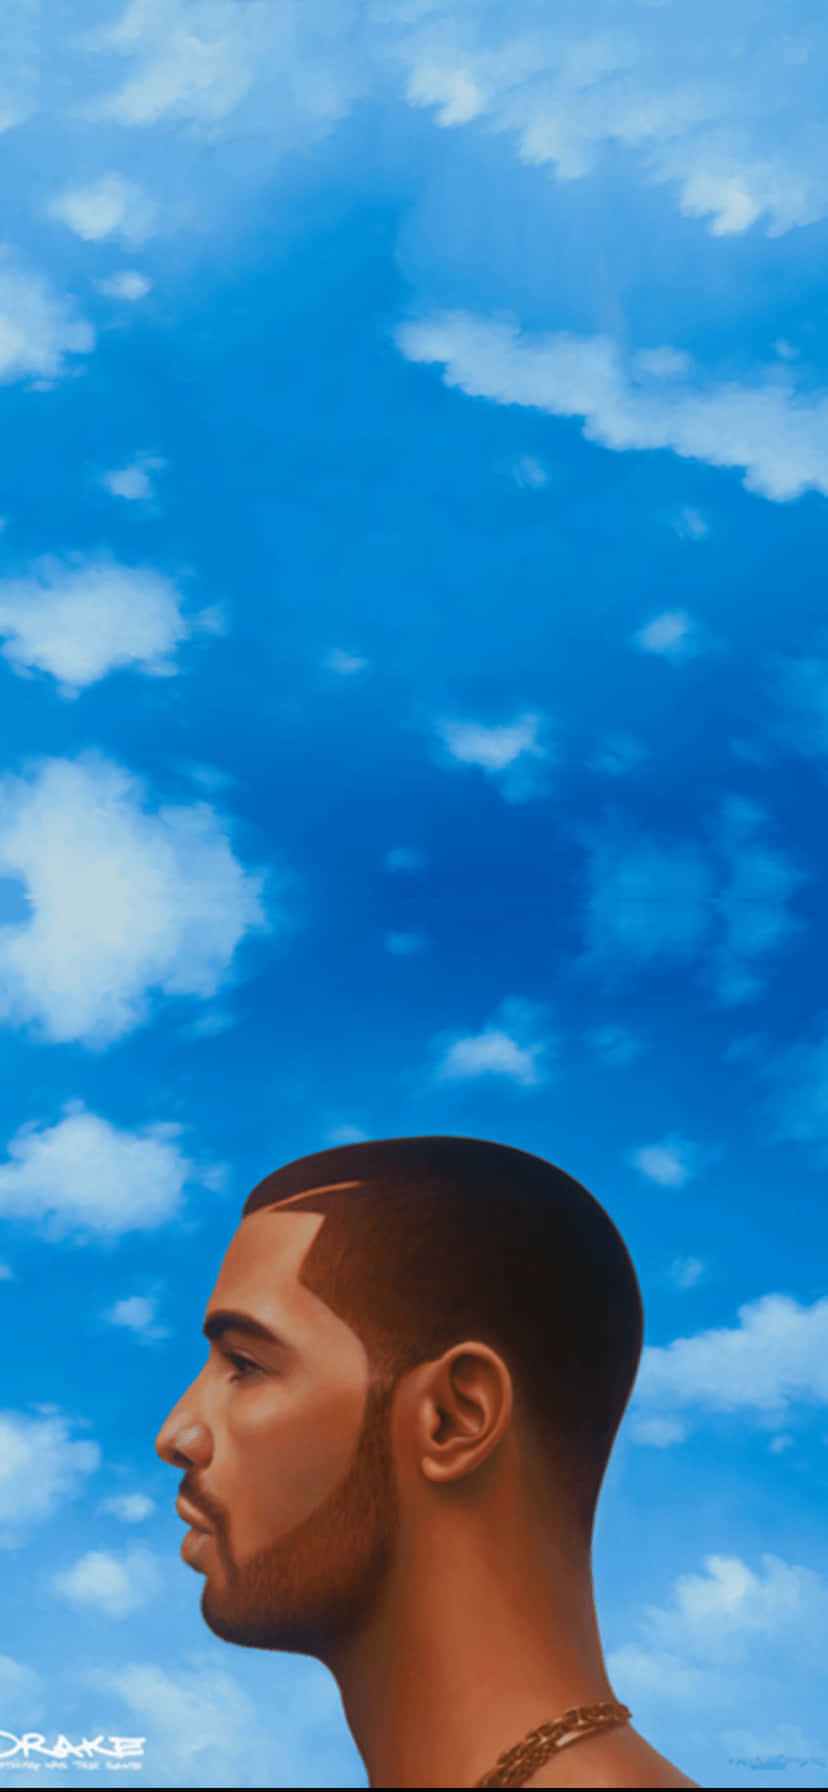 A man looking up at the sky - Drake